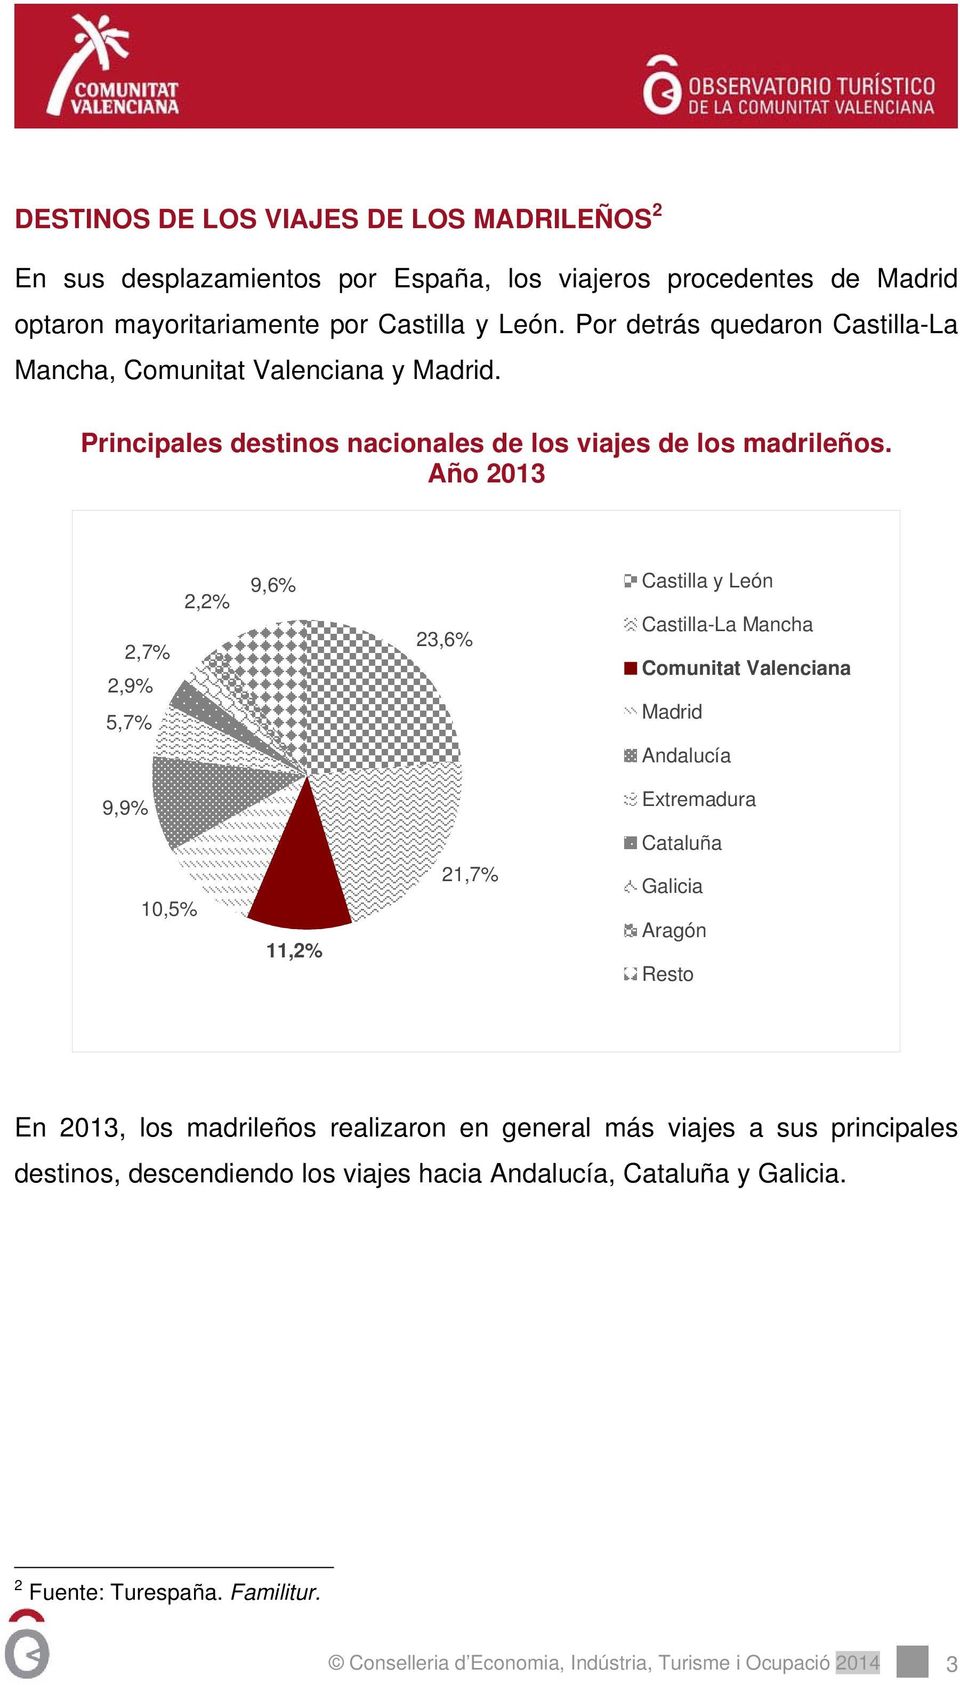 Año 2013 2,7% 2,9% 5,7% 2,2% 9,6% 23,6% Castilla y León Castilla-La Mancha Comunitat Valenciana Madrid Andalucía 9,9% Extremadura Cataluña 10,5% 11,2% 21,7% Galicia Aragón Resto